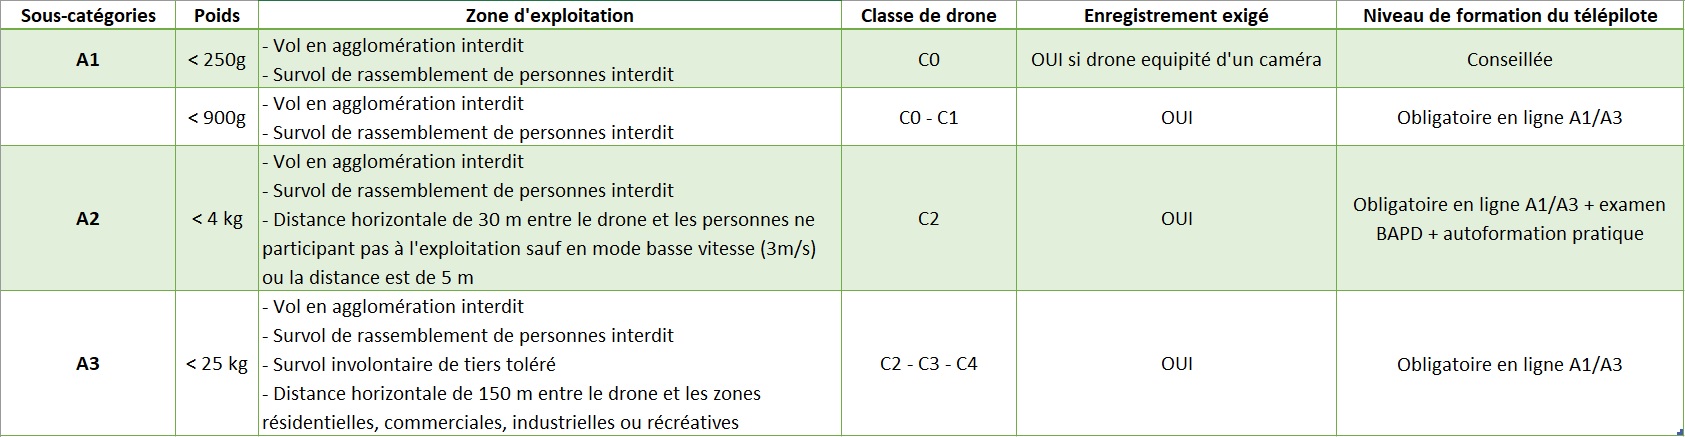 tableau categorie open drone